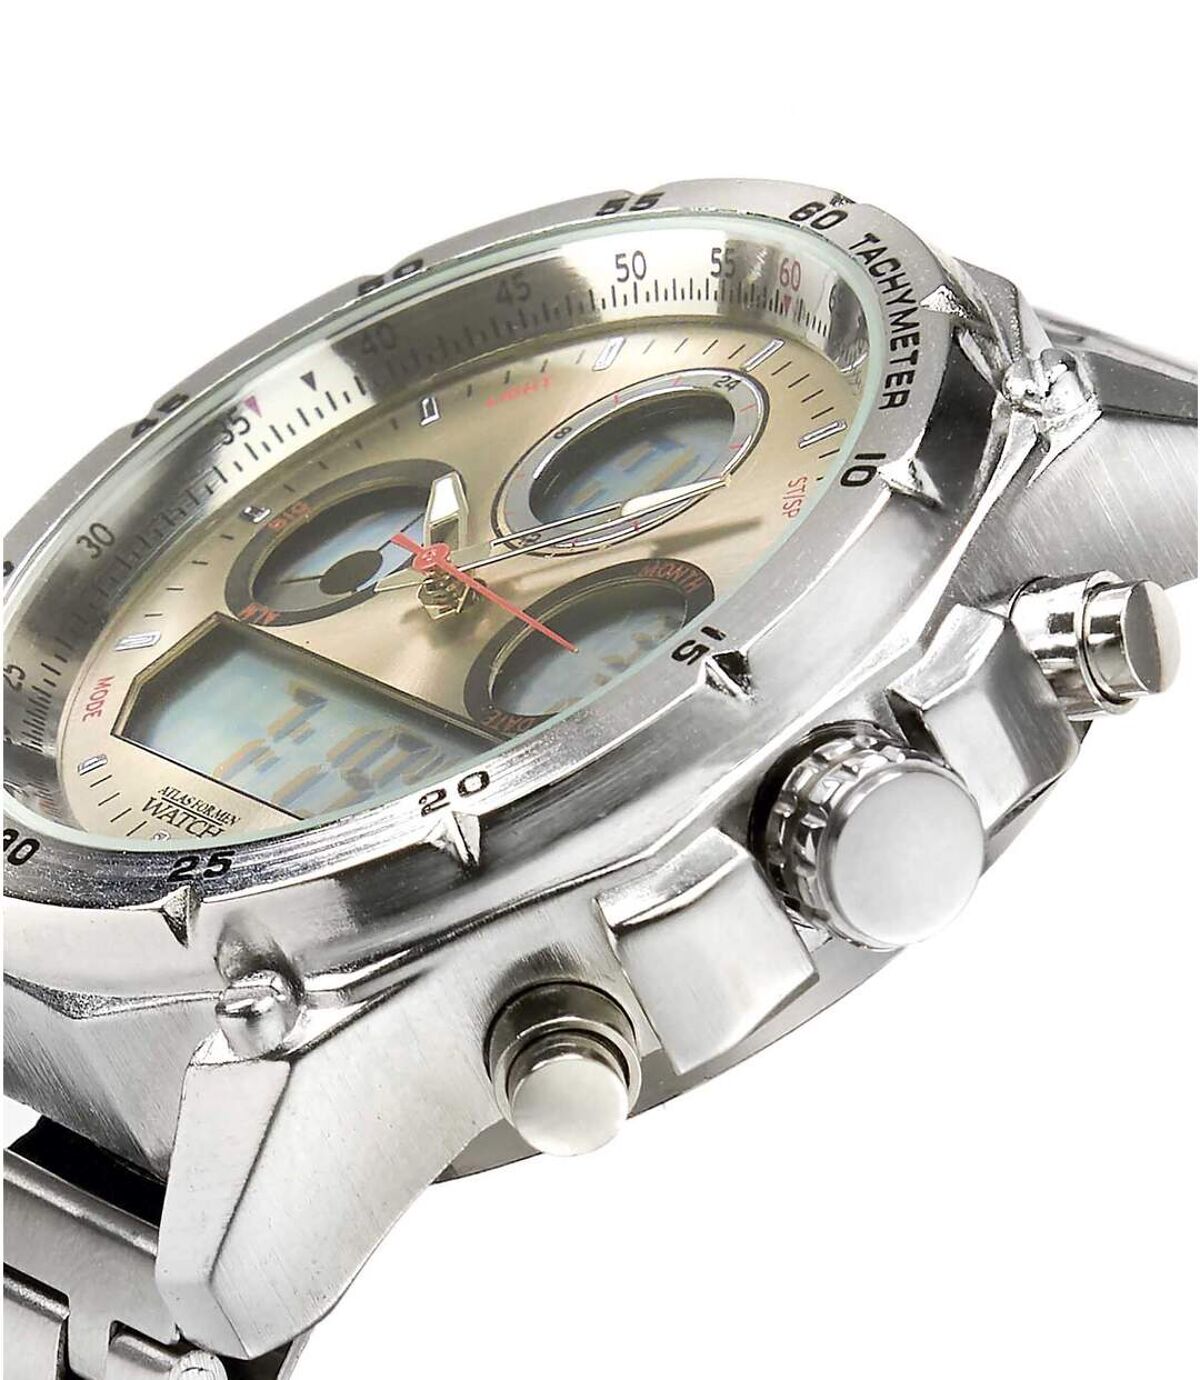 Sportowy zegarek cyfrowo-analogowy z chronometrem Atlas For Men